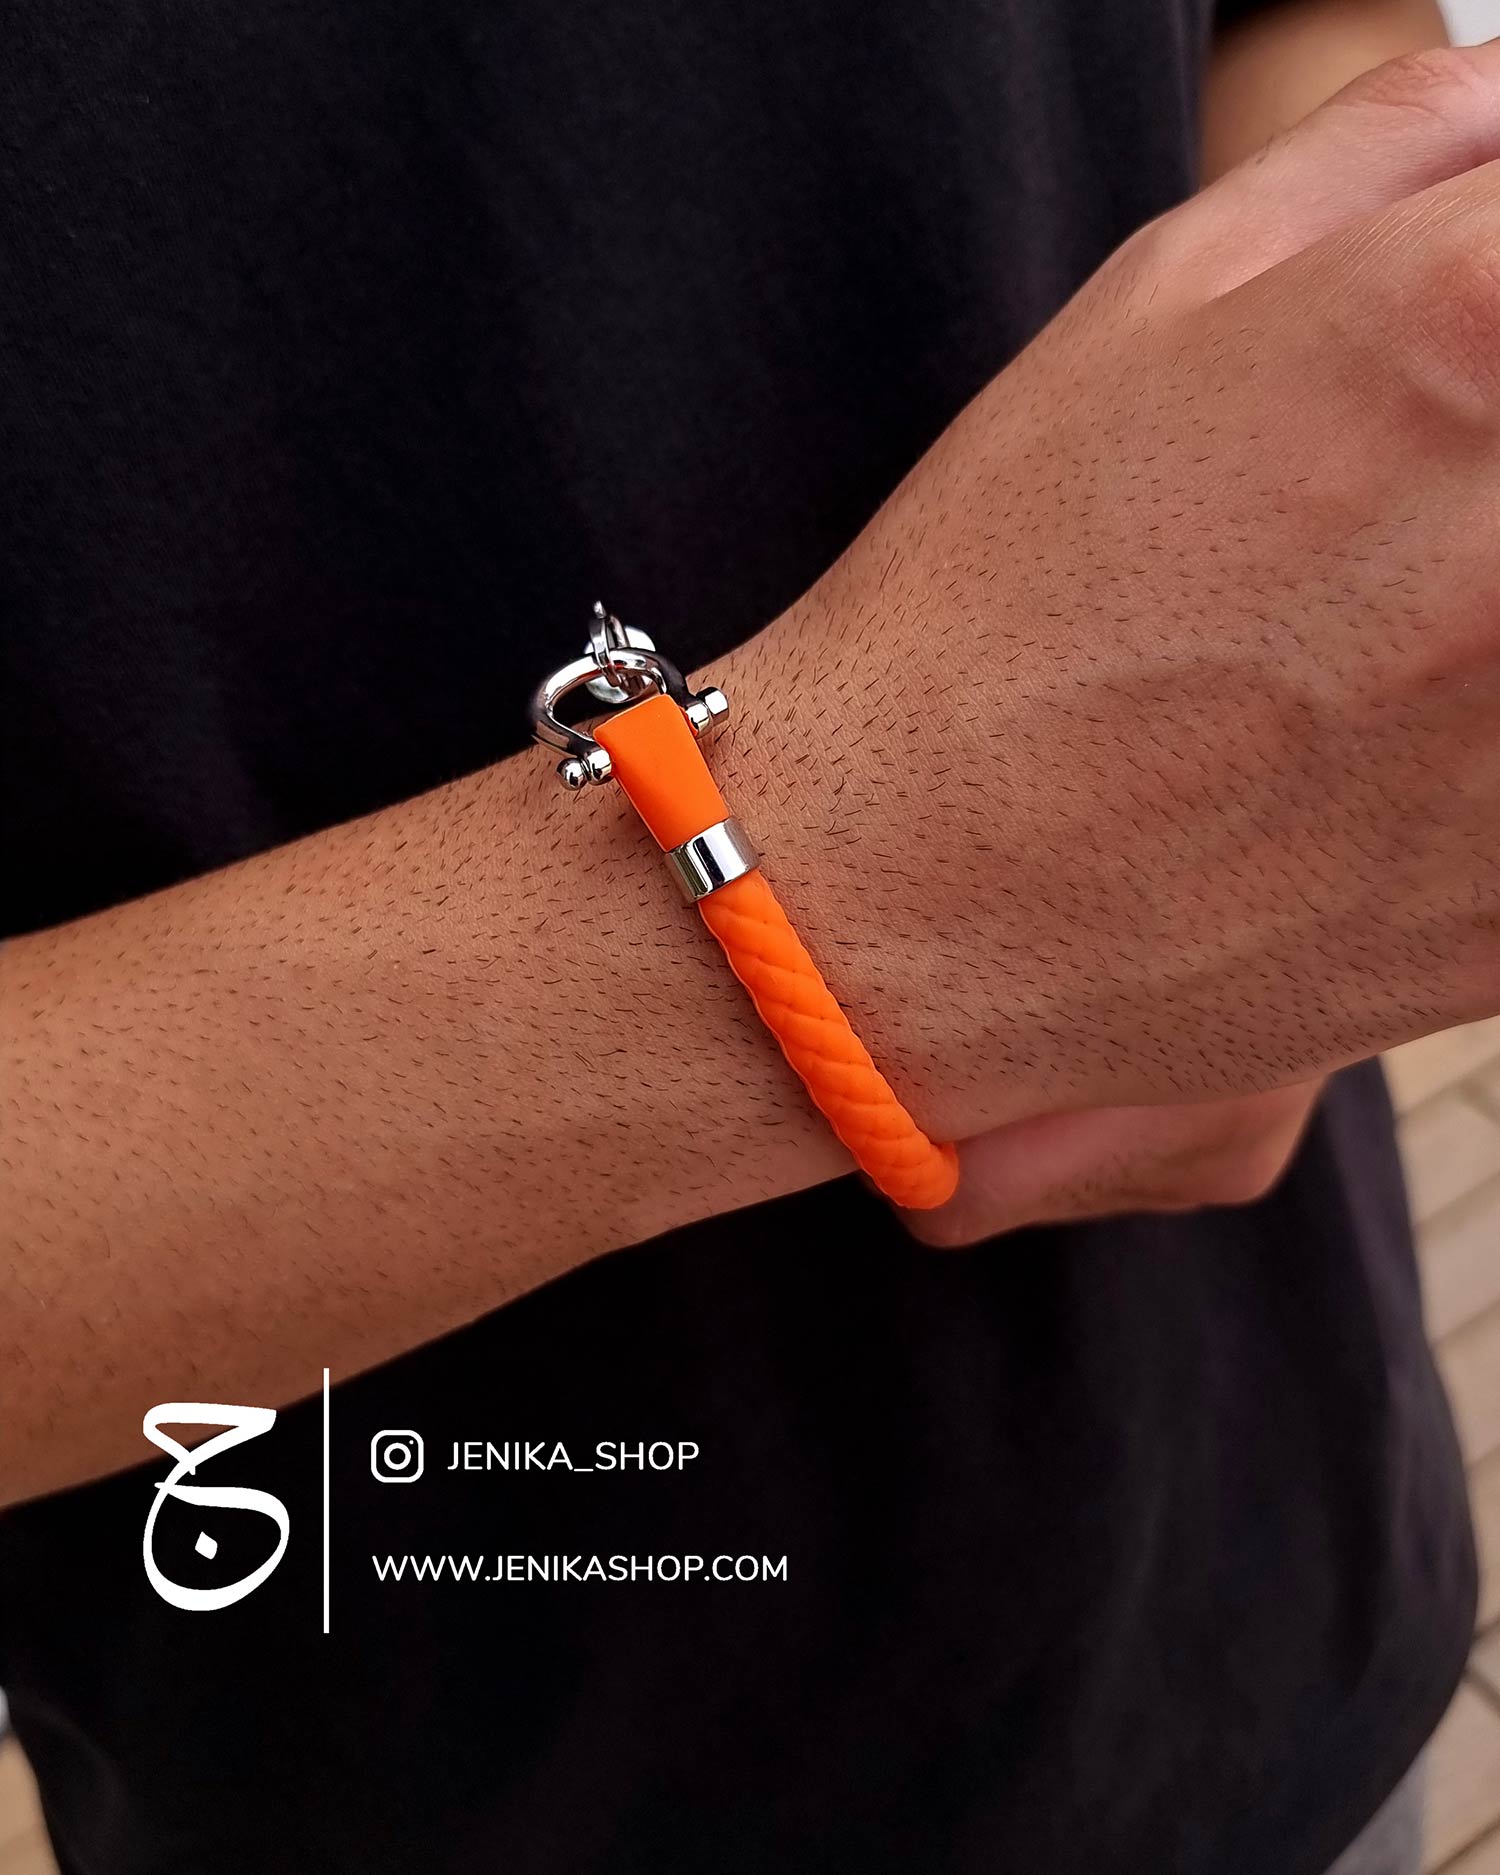 دستبند رابر امگا نارنجی